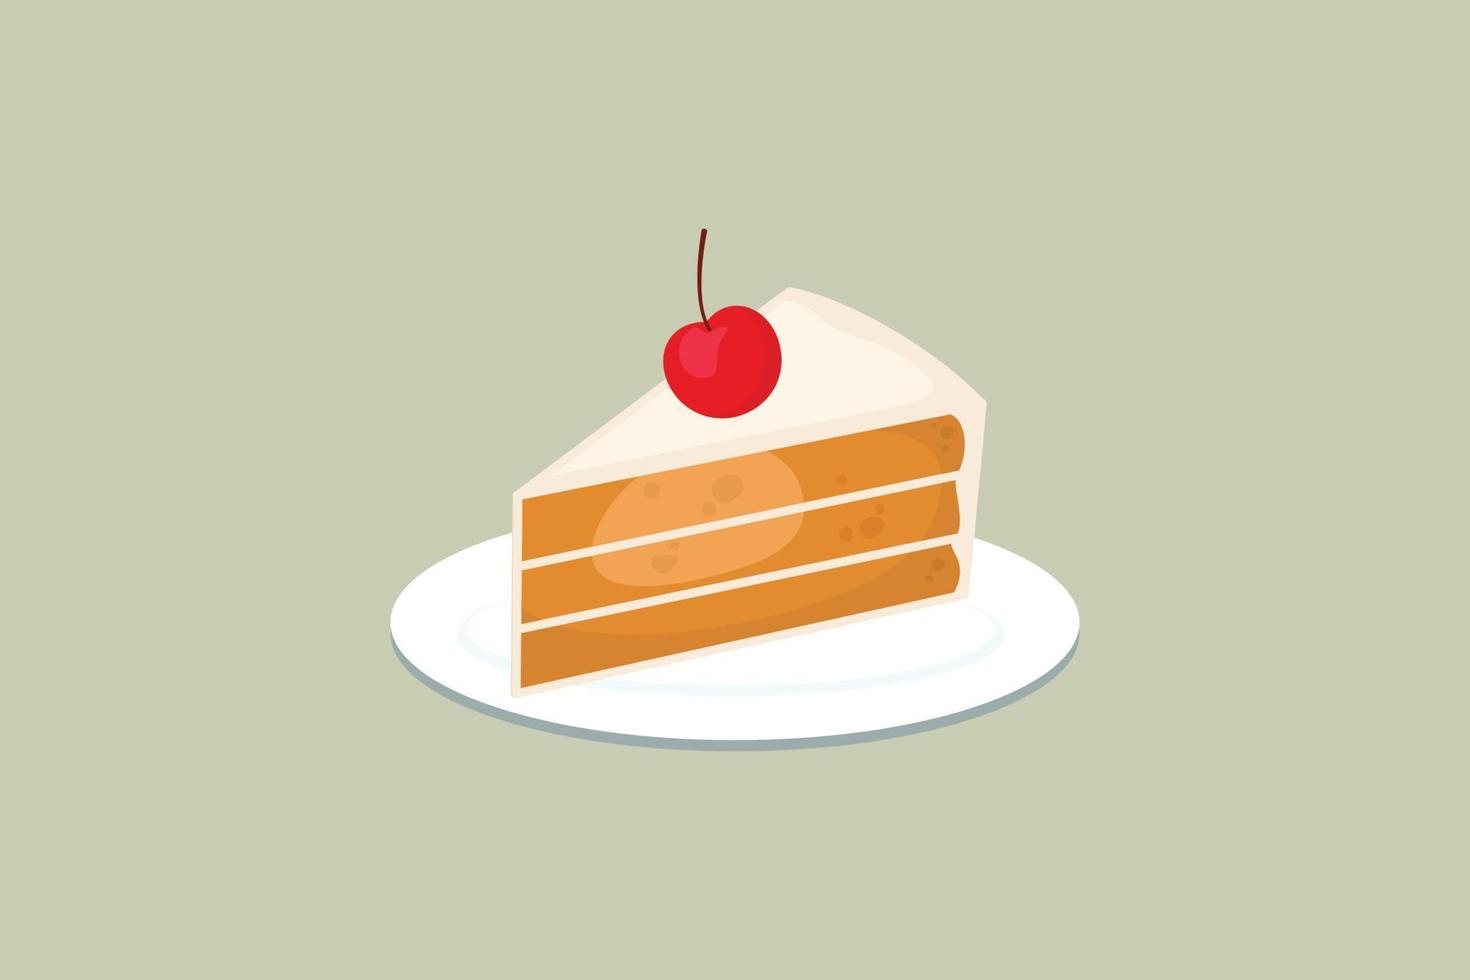 zoete cakeplak met geïsoleerd lycheefruit, ontwerp van de cakeplak in vlakke stijl. vector illustratie